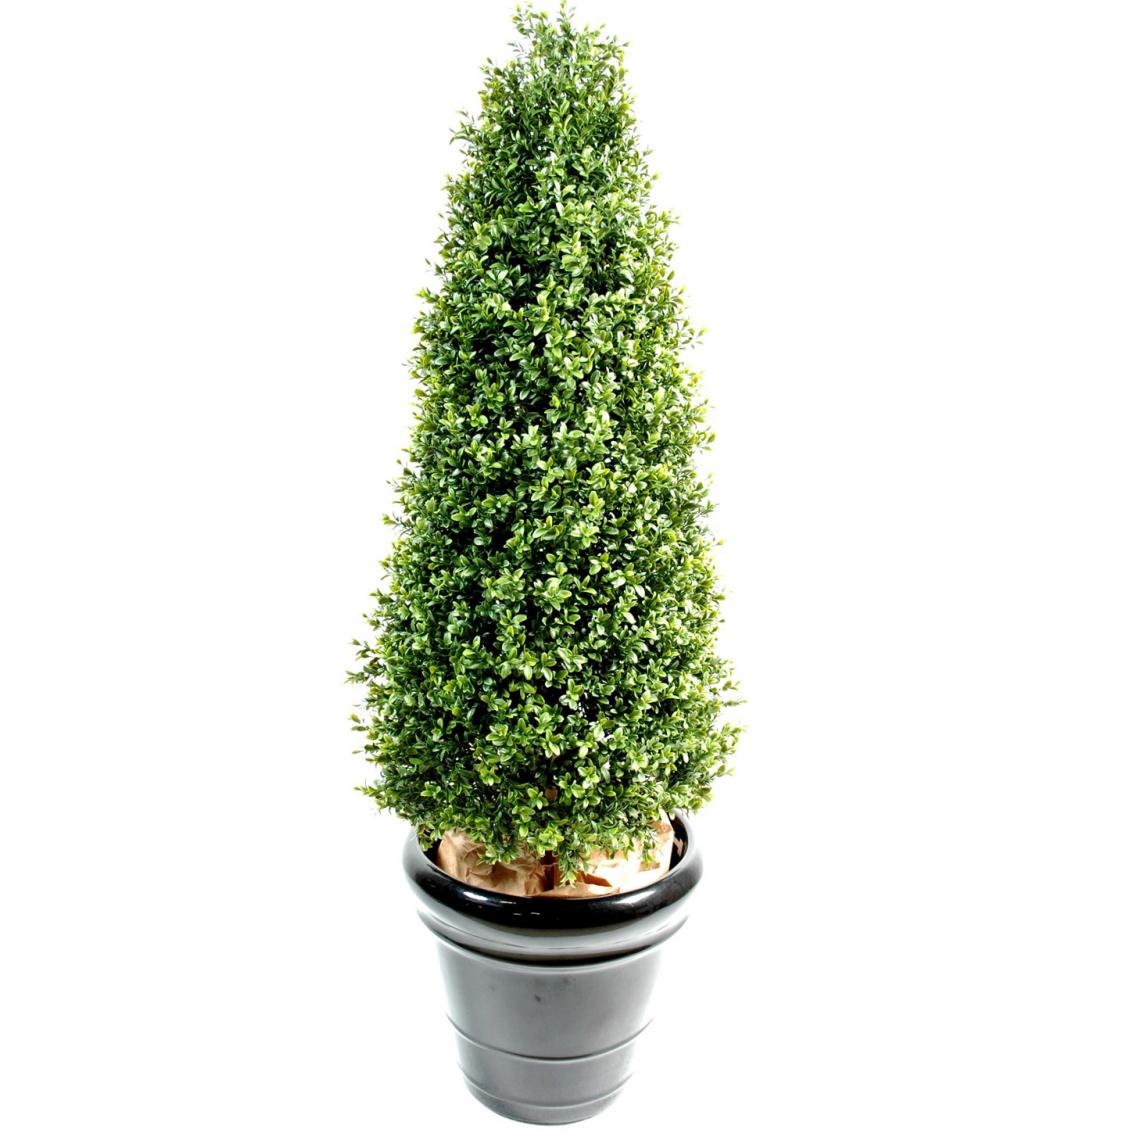 Pegane - Plante artificielle haute gamme Spécial extérieur / Buis Topiaire coloris vert - Dim : H.130 x L.50 cm - Plantes et fleurs artificielles